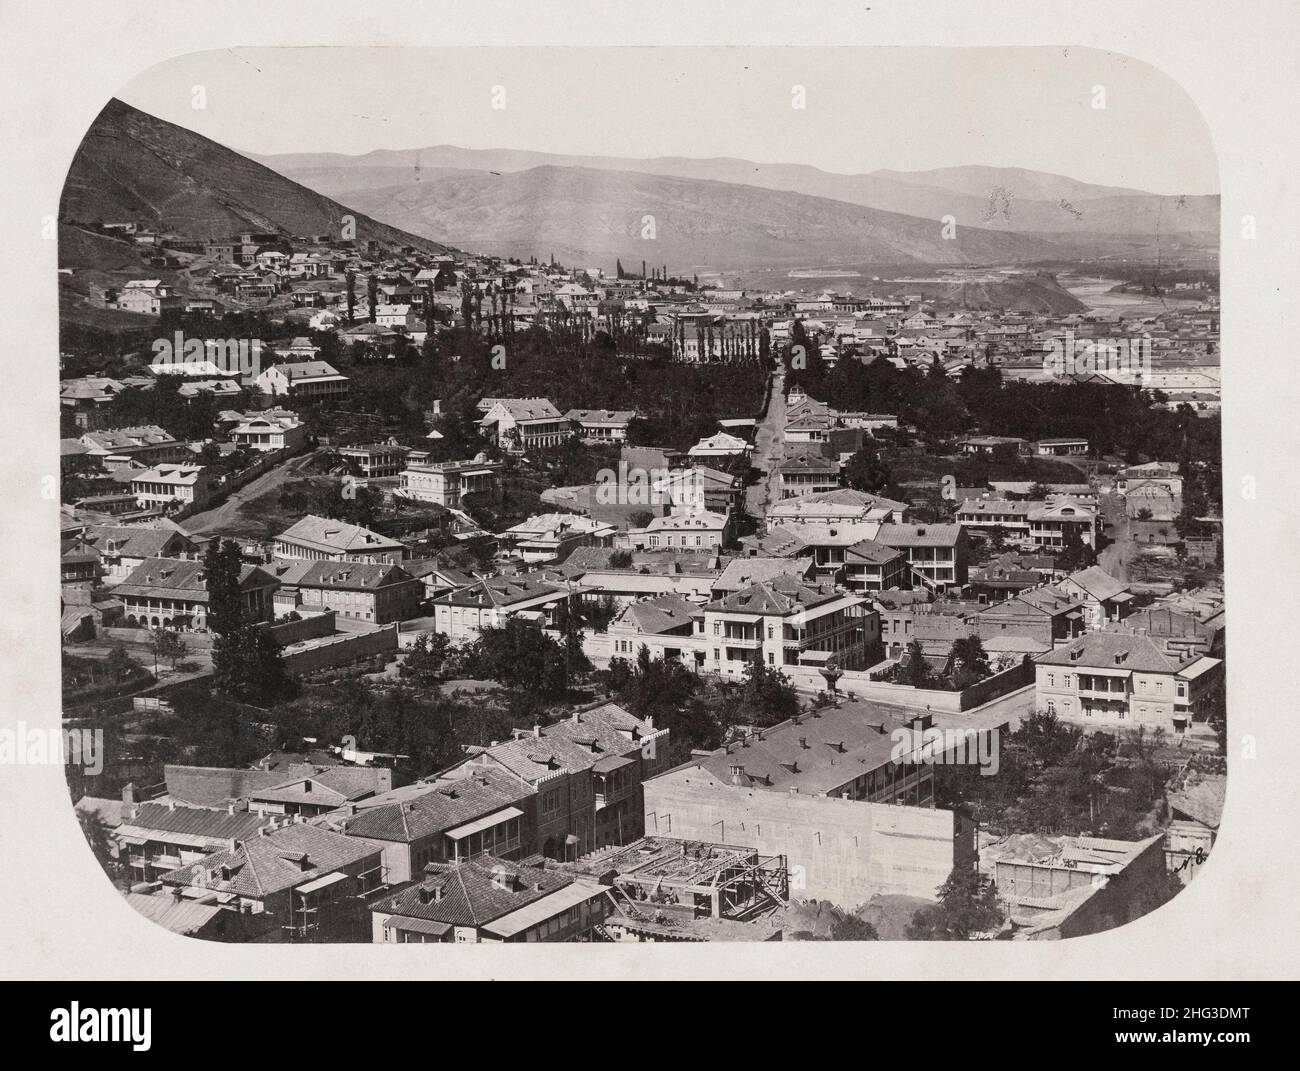 Blick auf den Tiflis aus dem 19th. Jahrhundert. Russisches Reich. 1860-1870 Tiflis, in einigen Sprachen noch bekannt unter seinem vor 1936 Namen Tiflis ist die Hauptstadt und die l Stockfoto